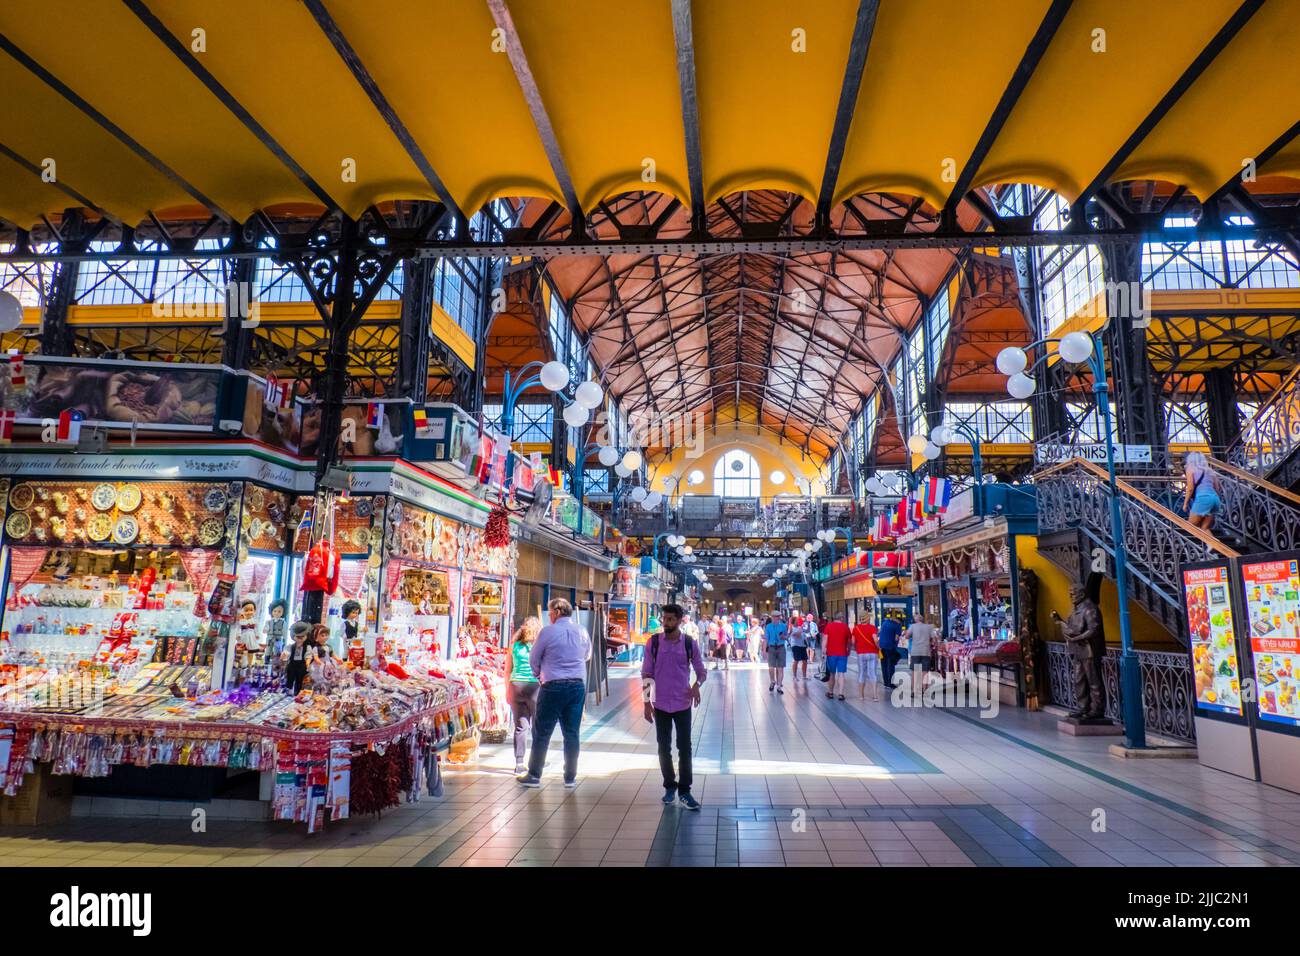 Nagy Vásárcsarnok, Great Market Hall, Belvaros, Stock Photo